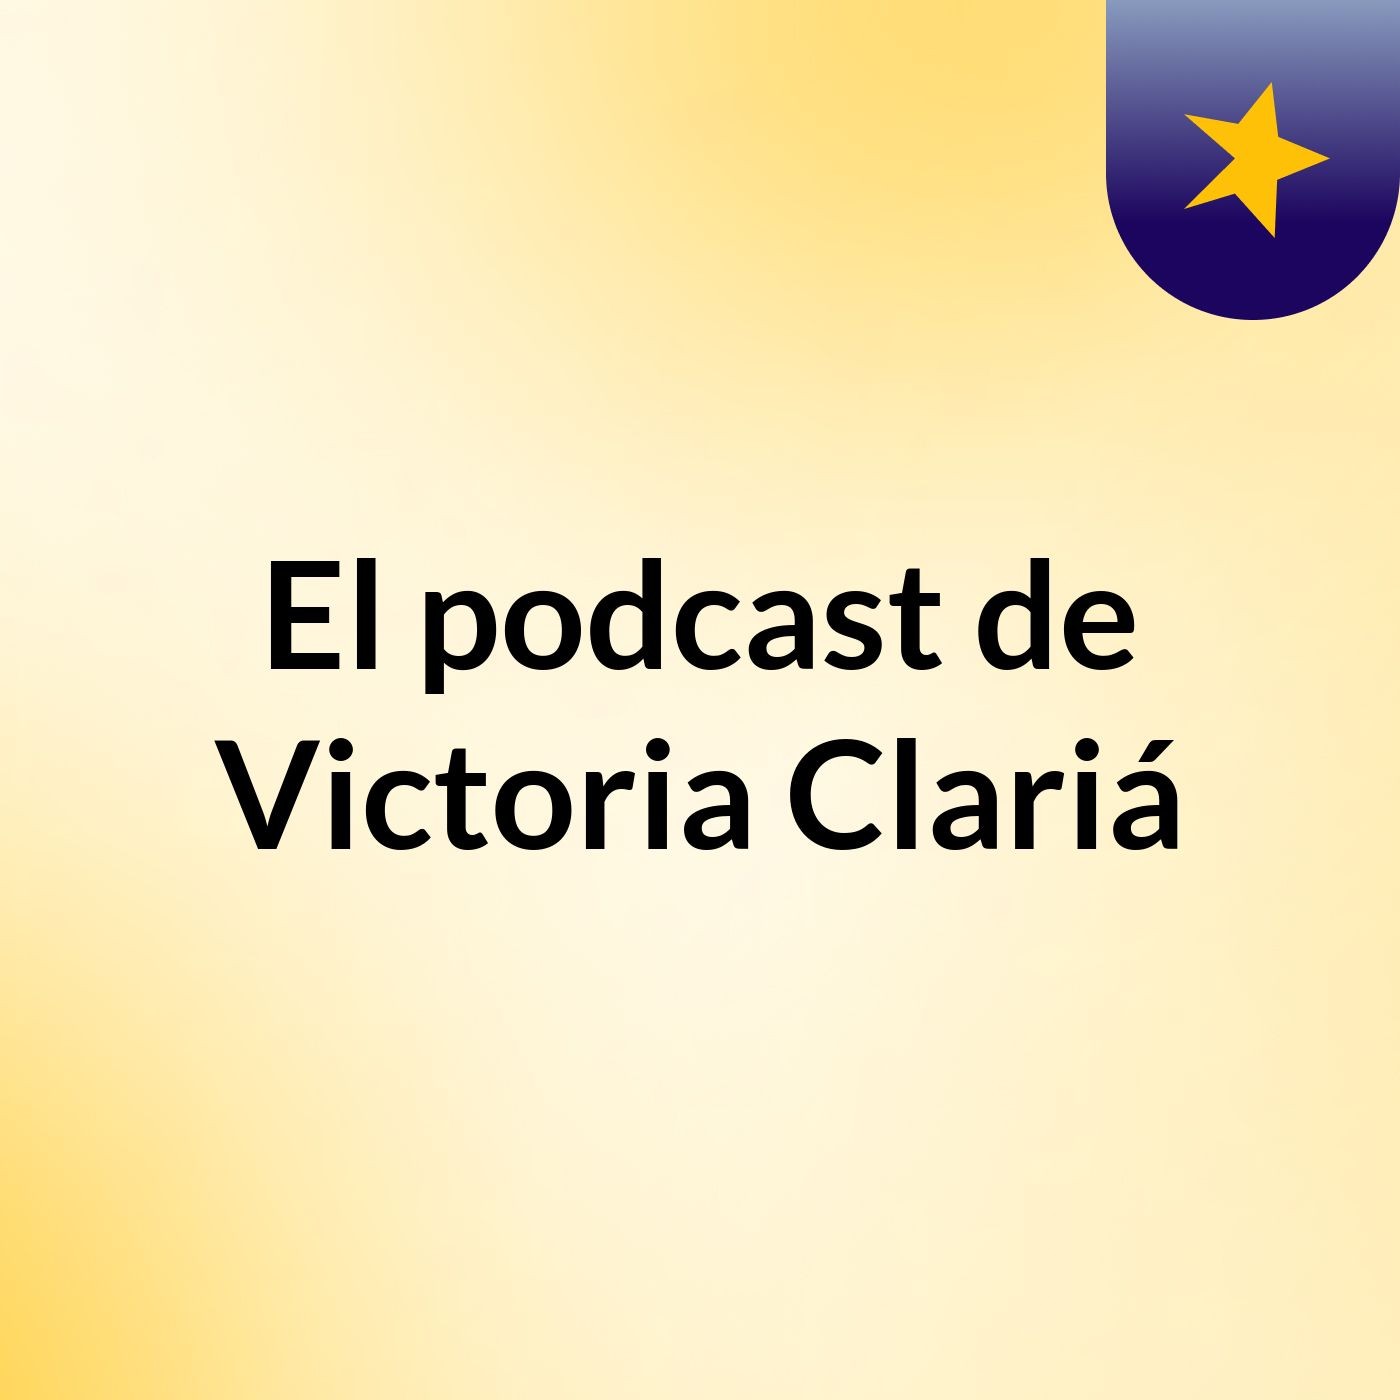 El podcast de Victoria Clariá